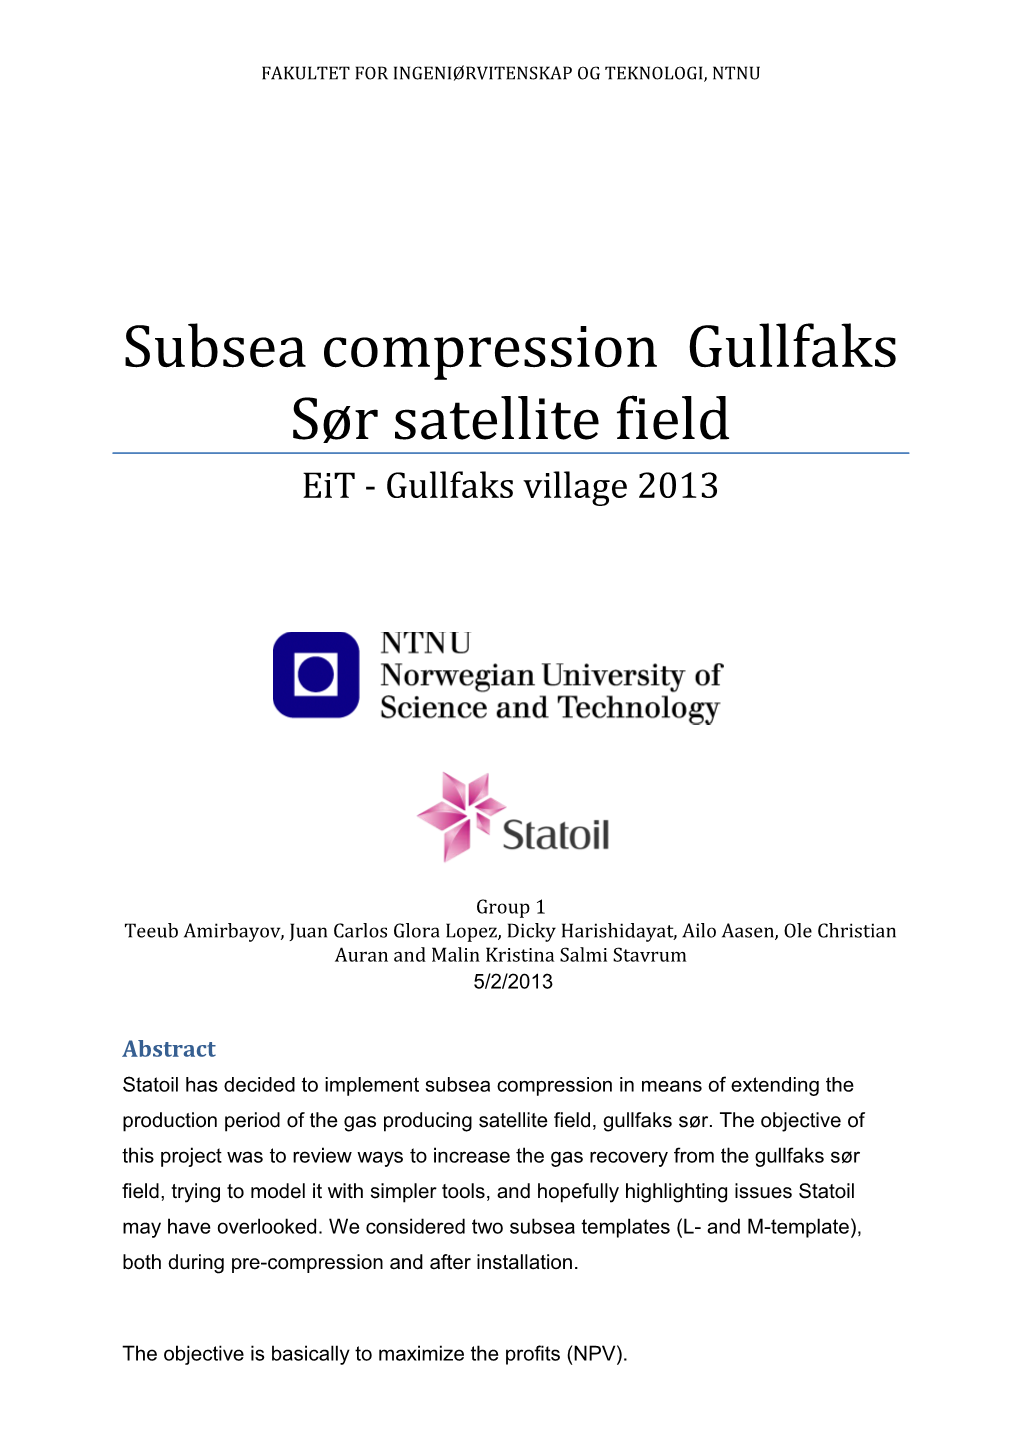 Subsea Compression Gullfaks Sør Satellite Field